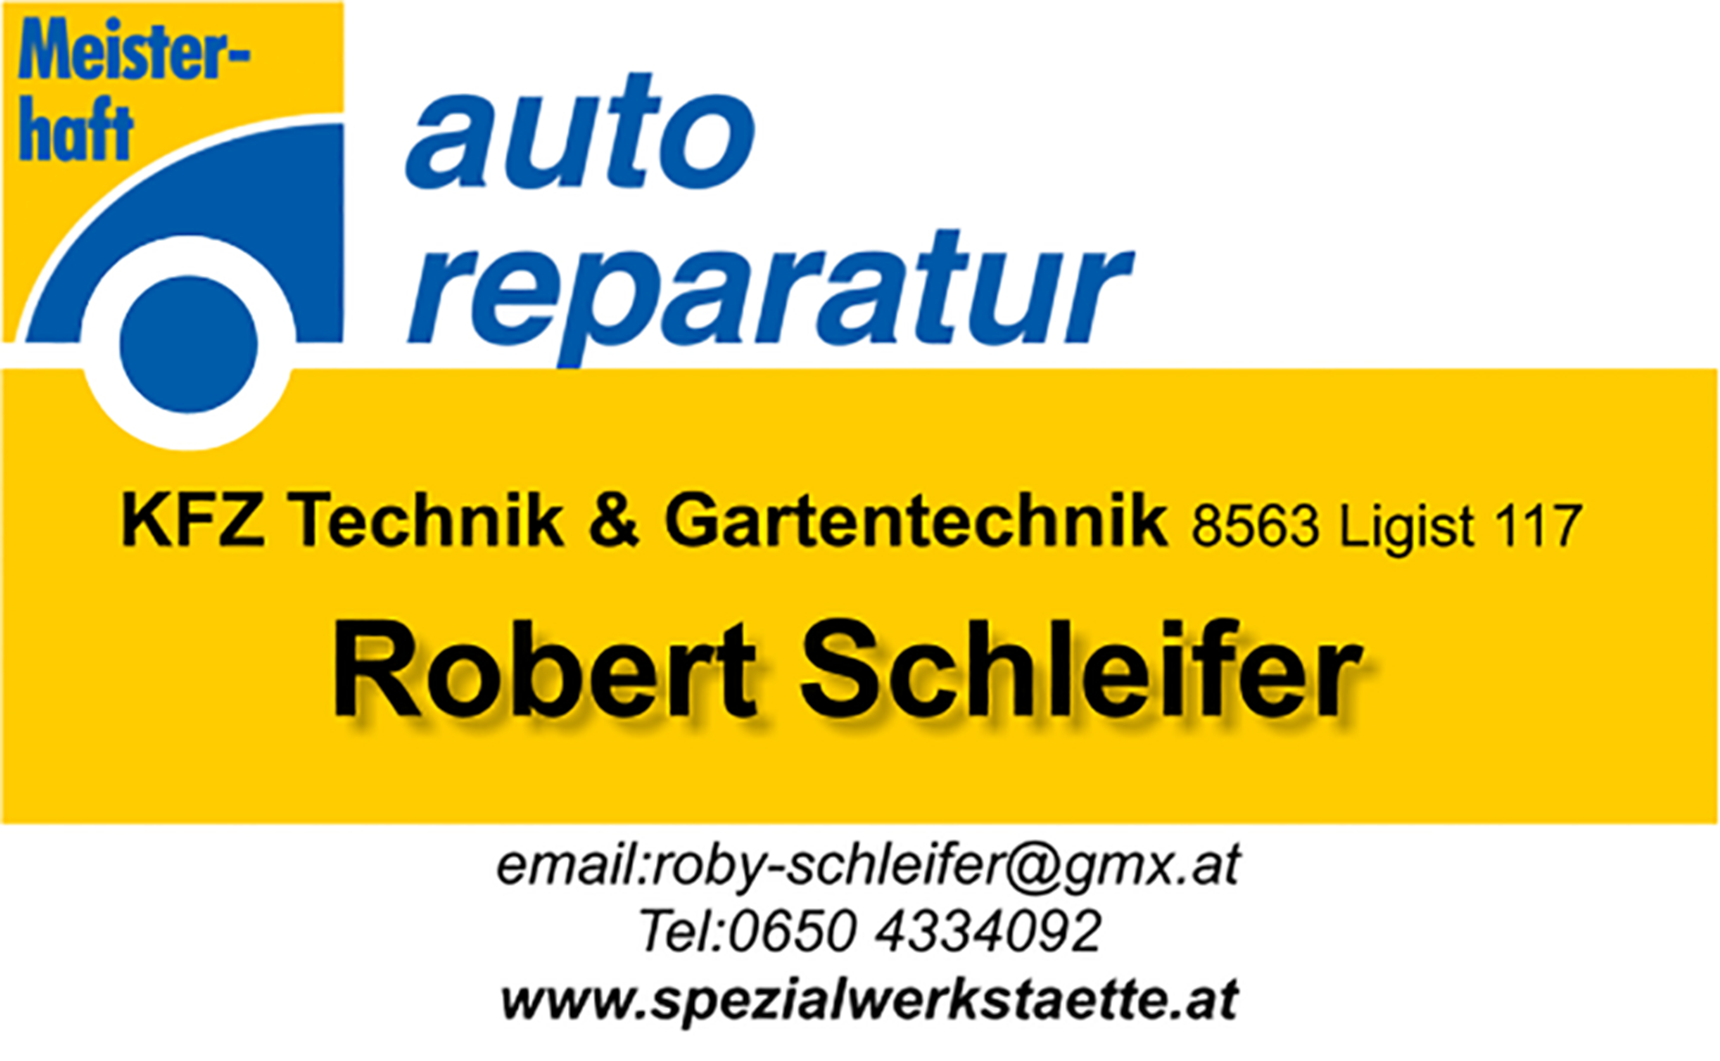 Auto reparatur Schleifer